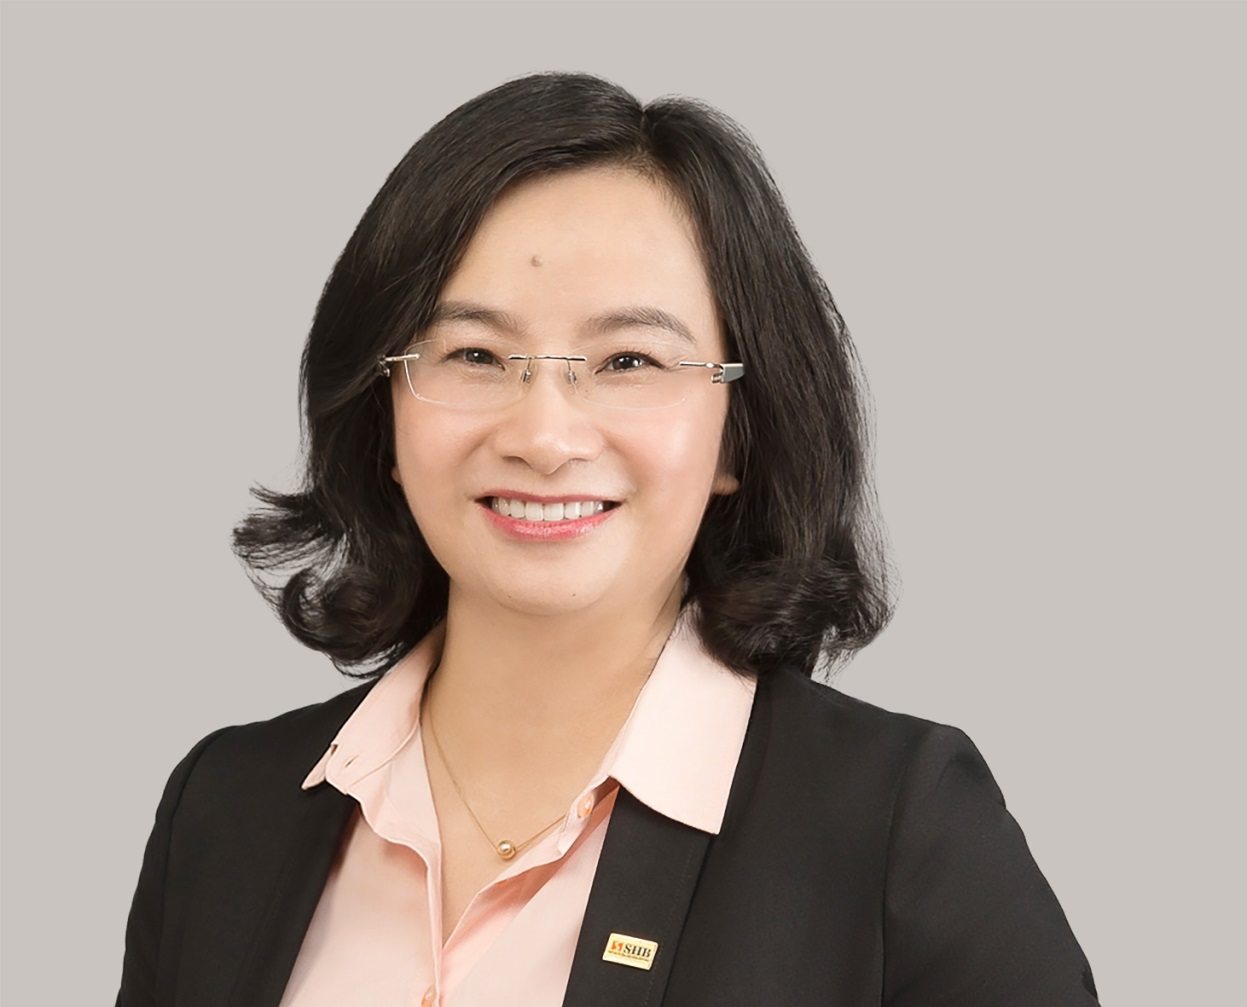 Ngân hàng Nhà nước chấp thuận Bà Ngô Thu Hà giữ chức vụ Tổng Giám đốc SHB - Ảnh 1.